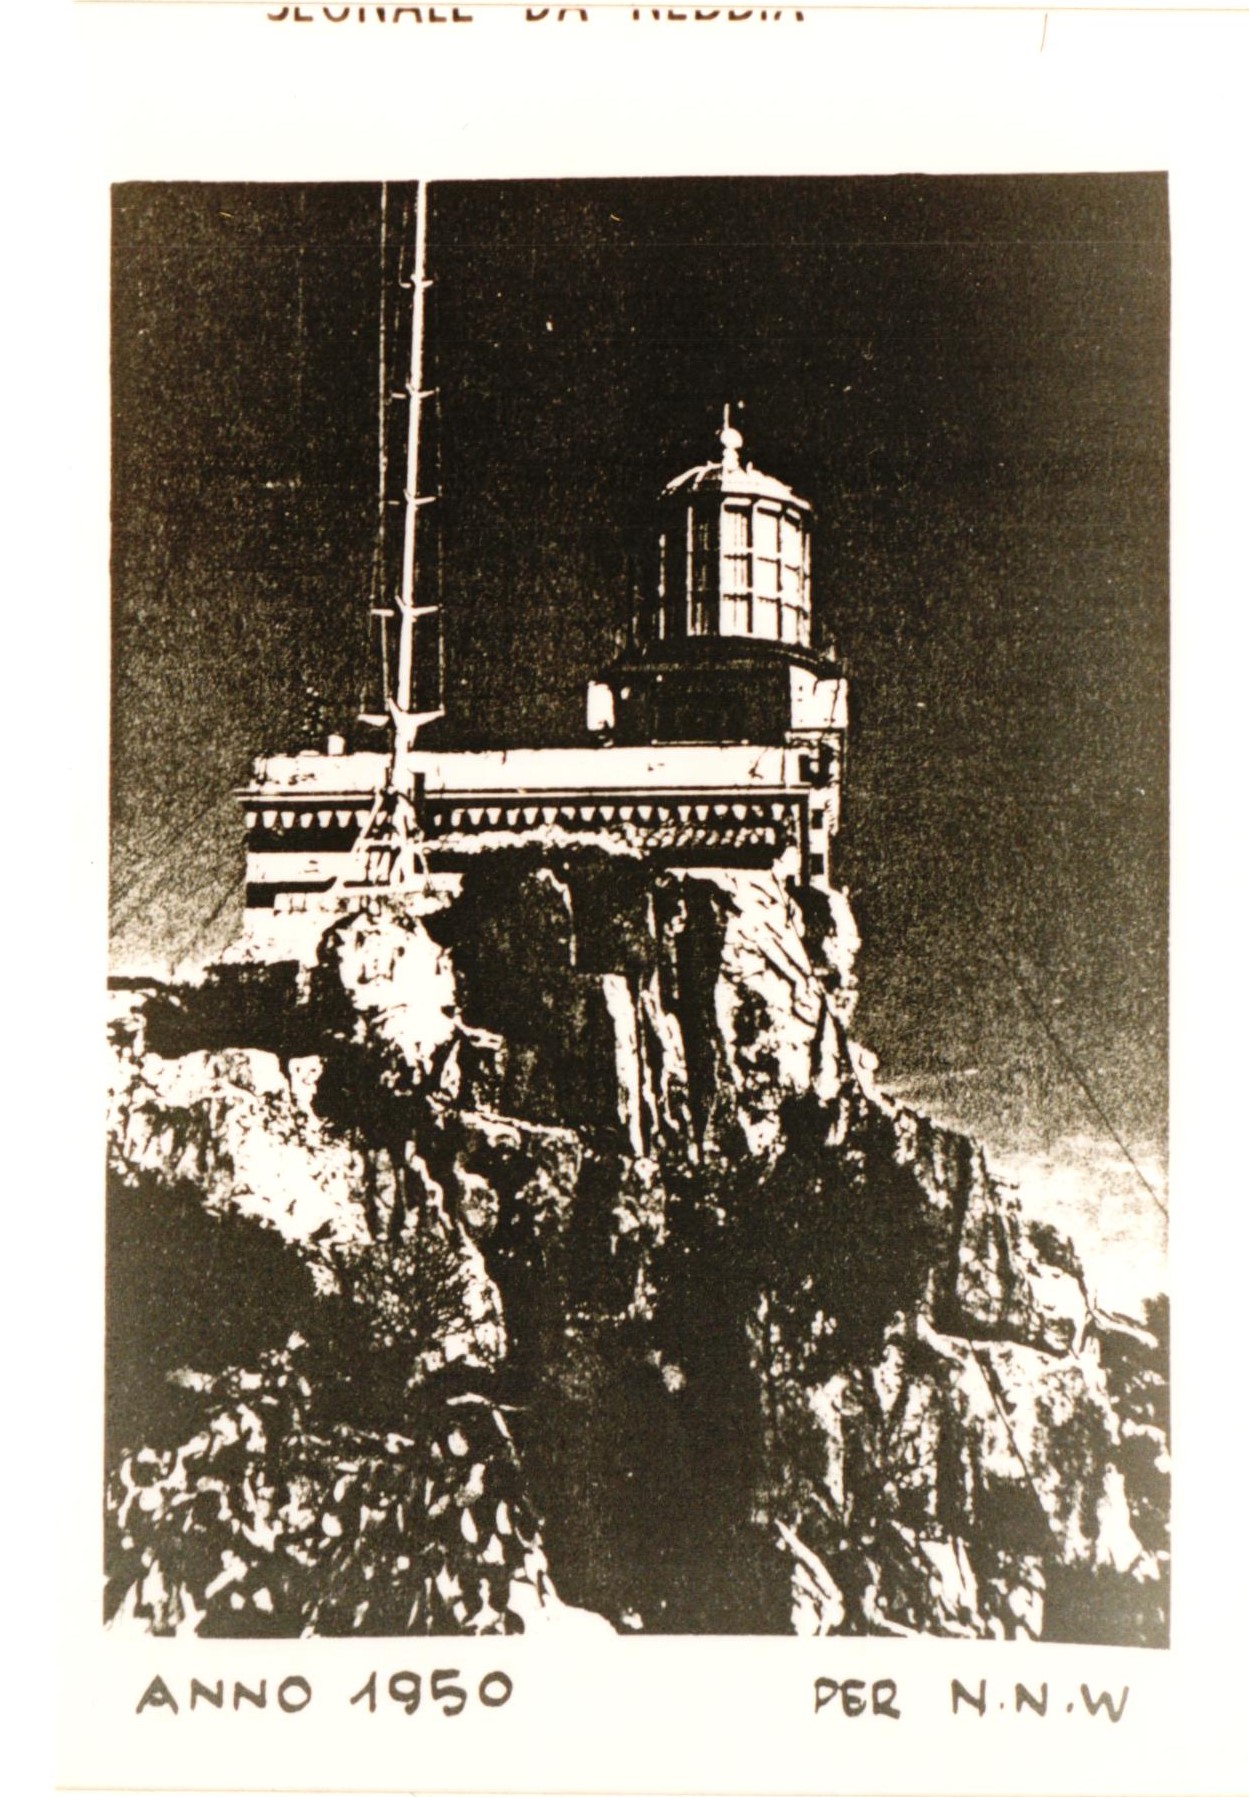 Faro di Capo Bellavista (faro, di altura, di segnalamento marittimo, di atterraggio e di scoperta) - Tortolì (OG)  (XVII)